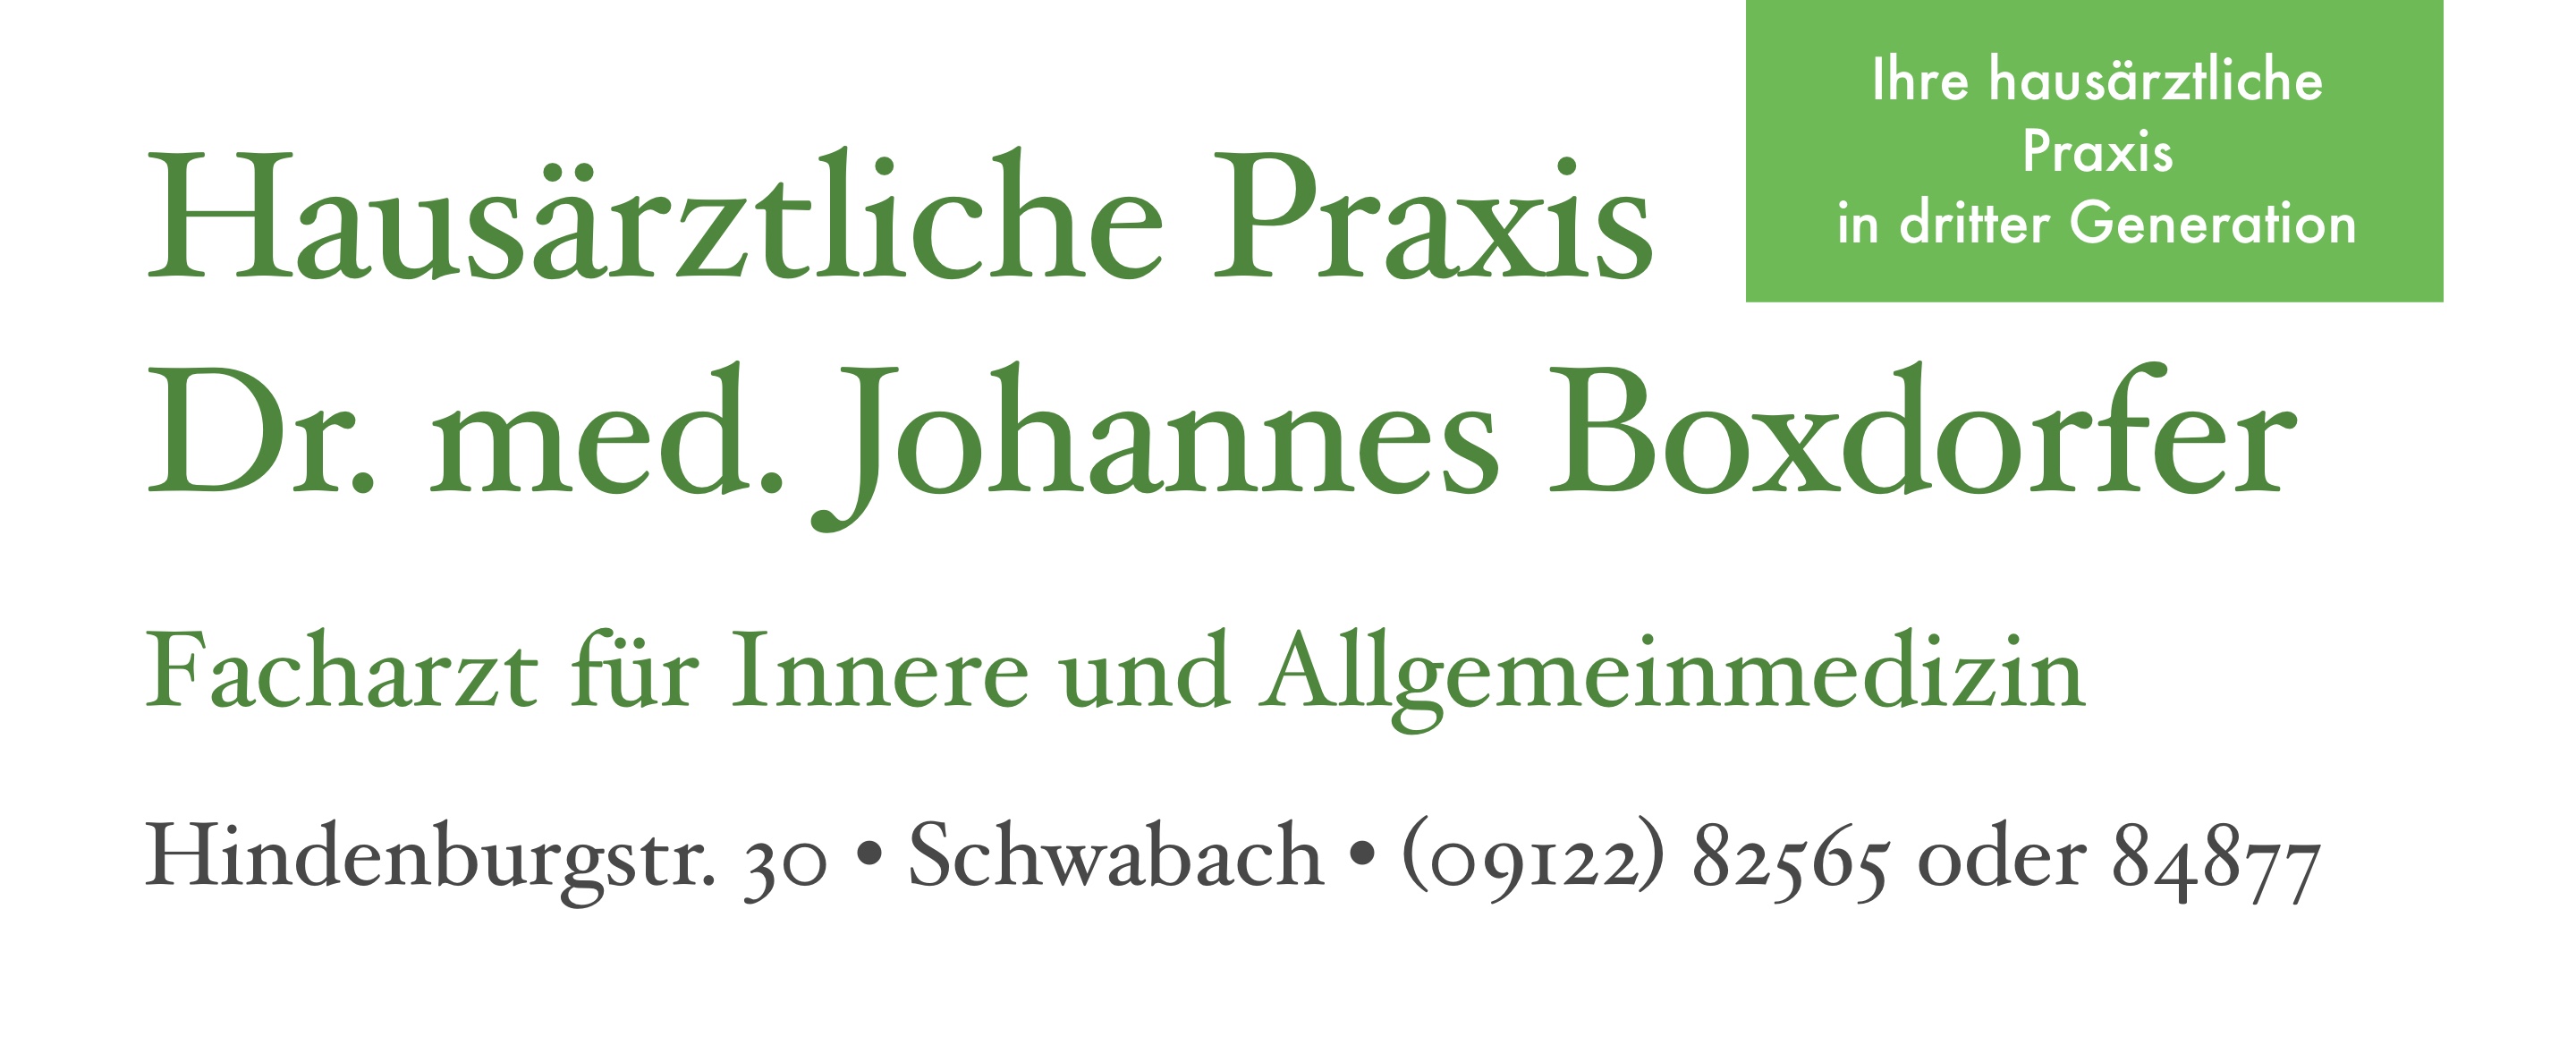 Hausärztliche Praxis Dr. med. Johannes Boxdorfer Facharzt für Innere und Allgemeinmedizin Hindenburgstr. 30 • Schwabach • (09122) 82565 oder 84877